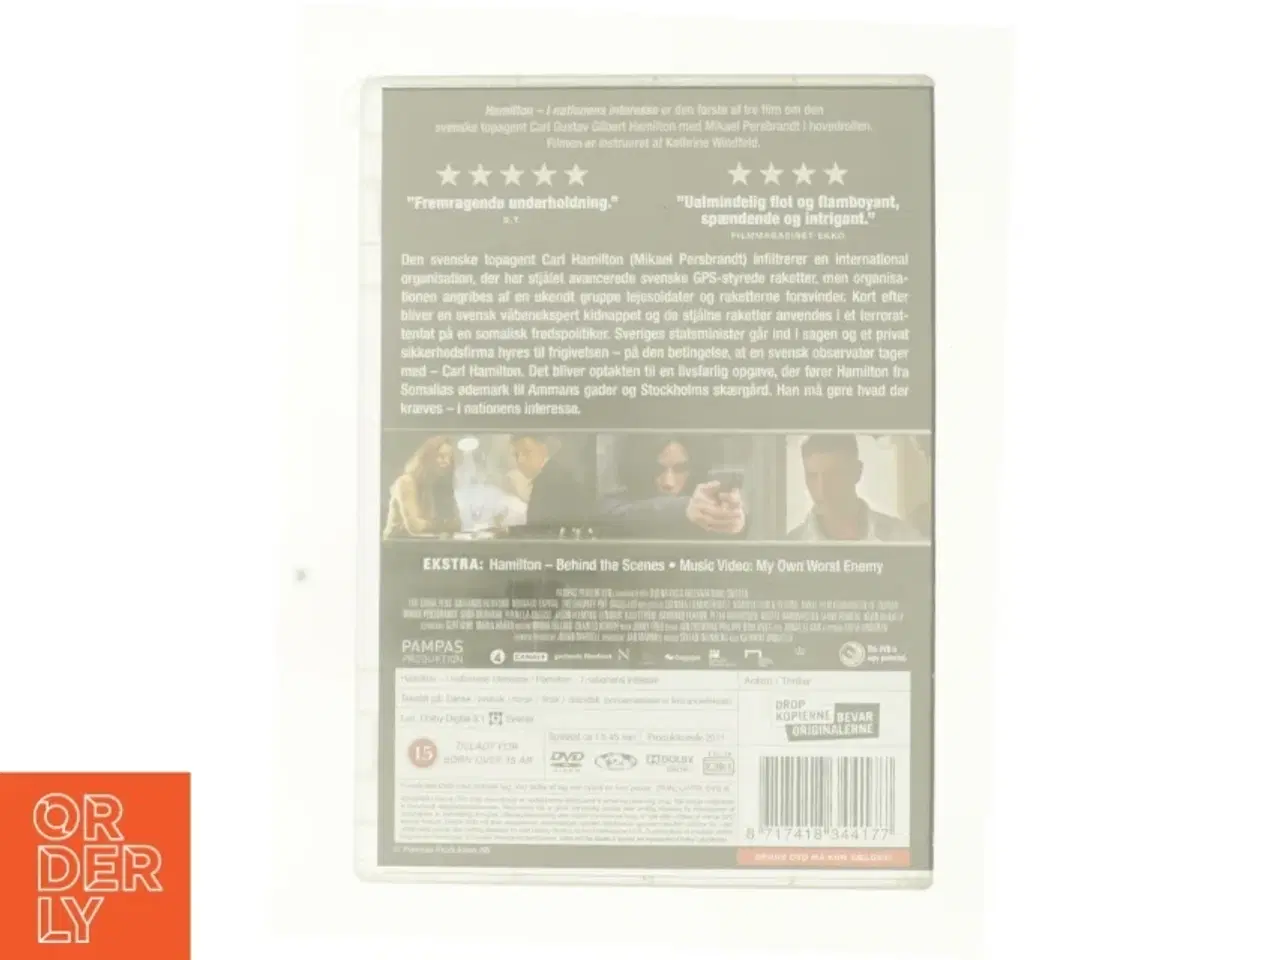 Billede 2 - Hamilton - I Nationens Interesse fra DVD